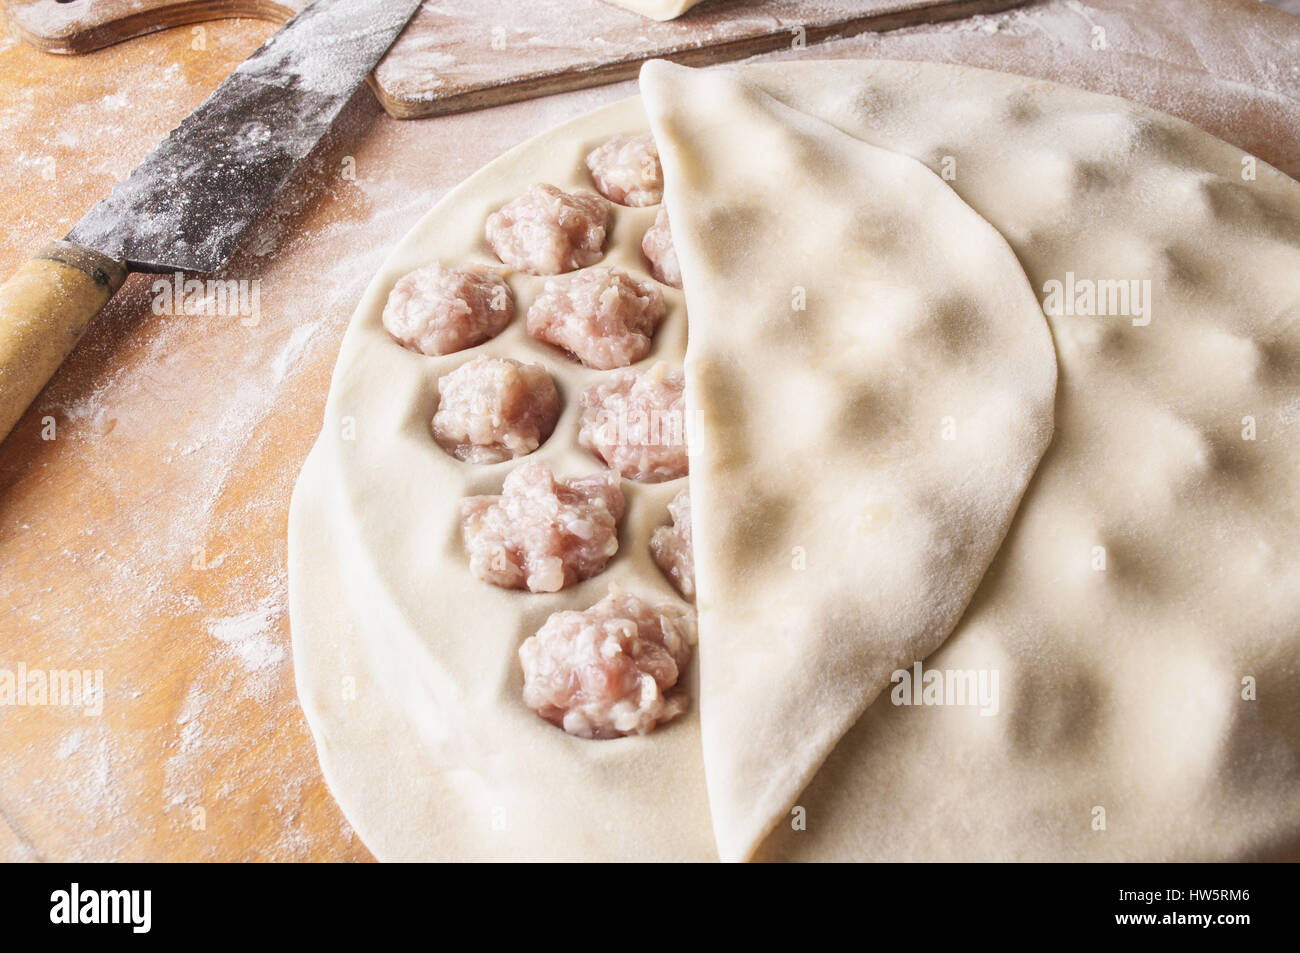 Le processus étape par étape de faire des boulettes faites maison, raviolis ou avec des pelmeni la viande hachée à l'aide de remplissage du moule Ravioli Ravioli ou bouilloire. Banque D'Images